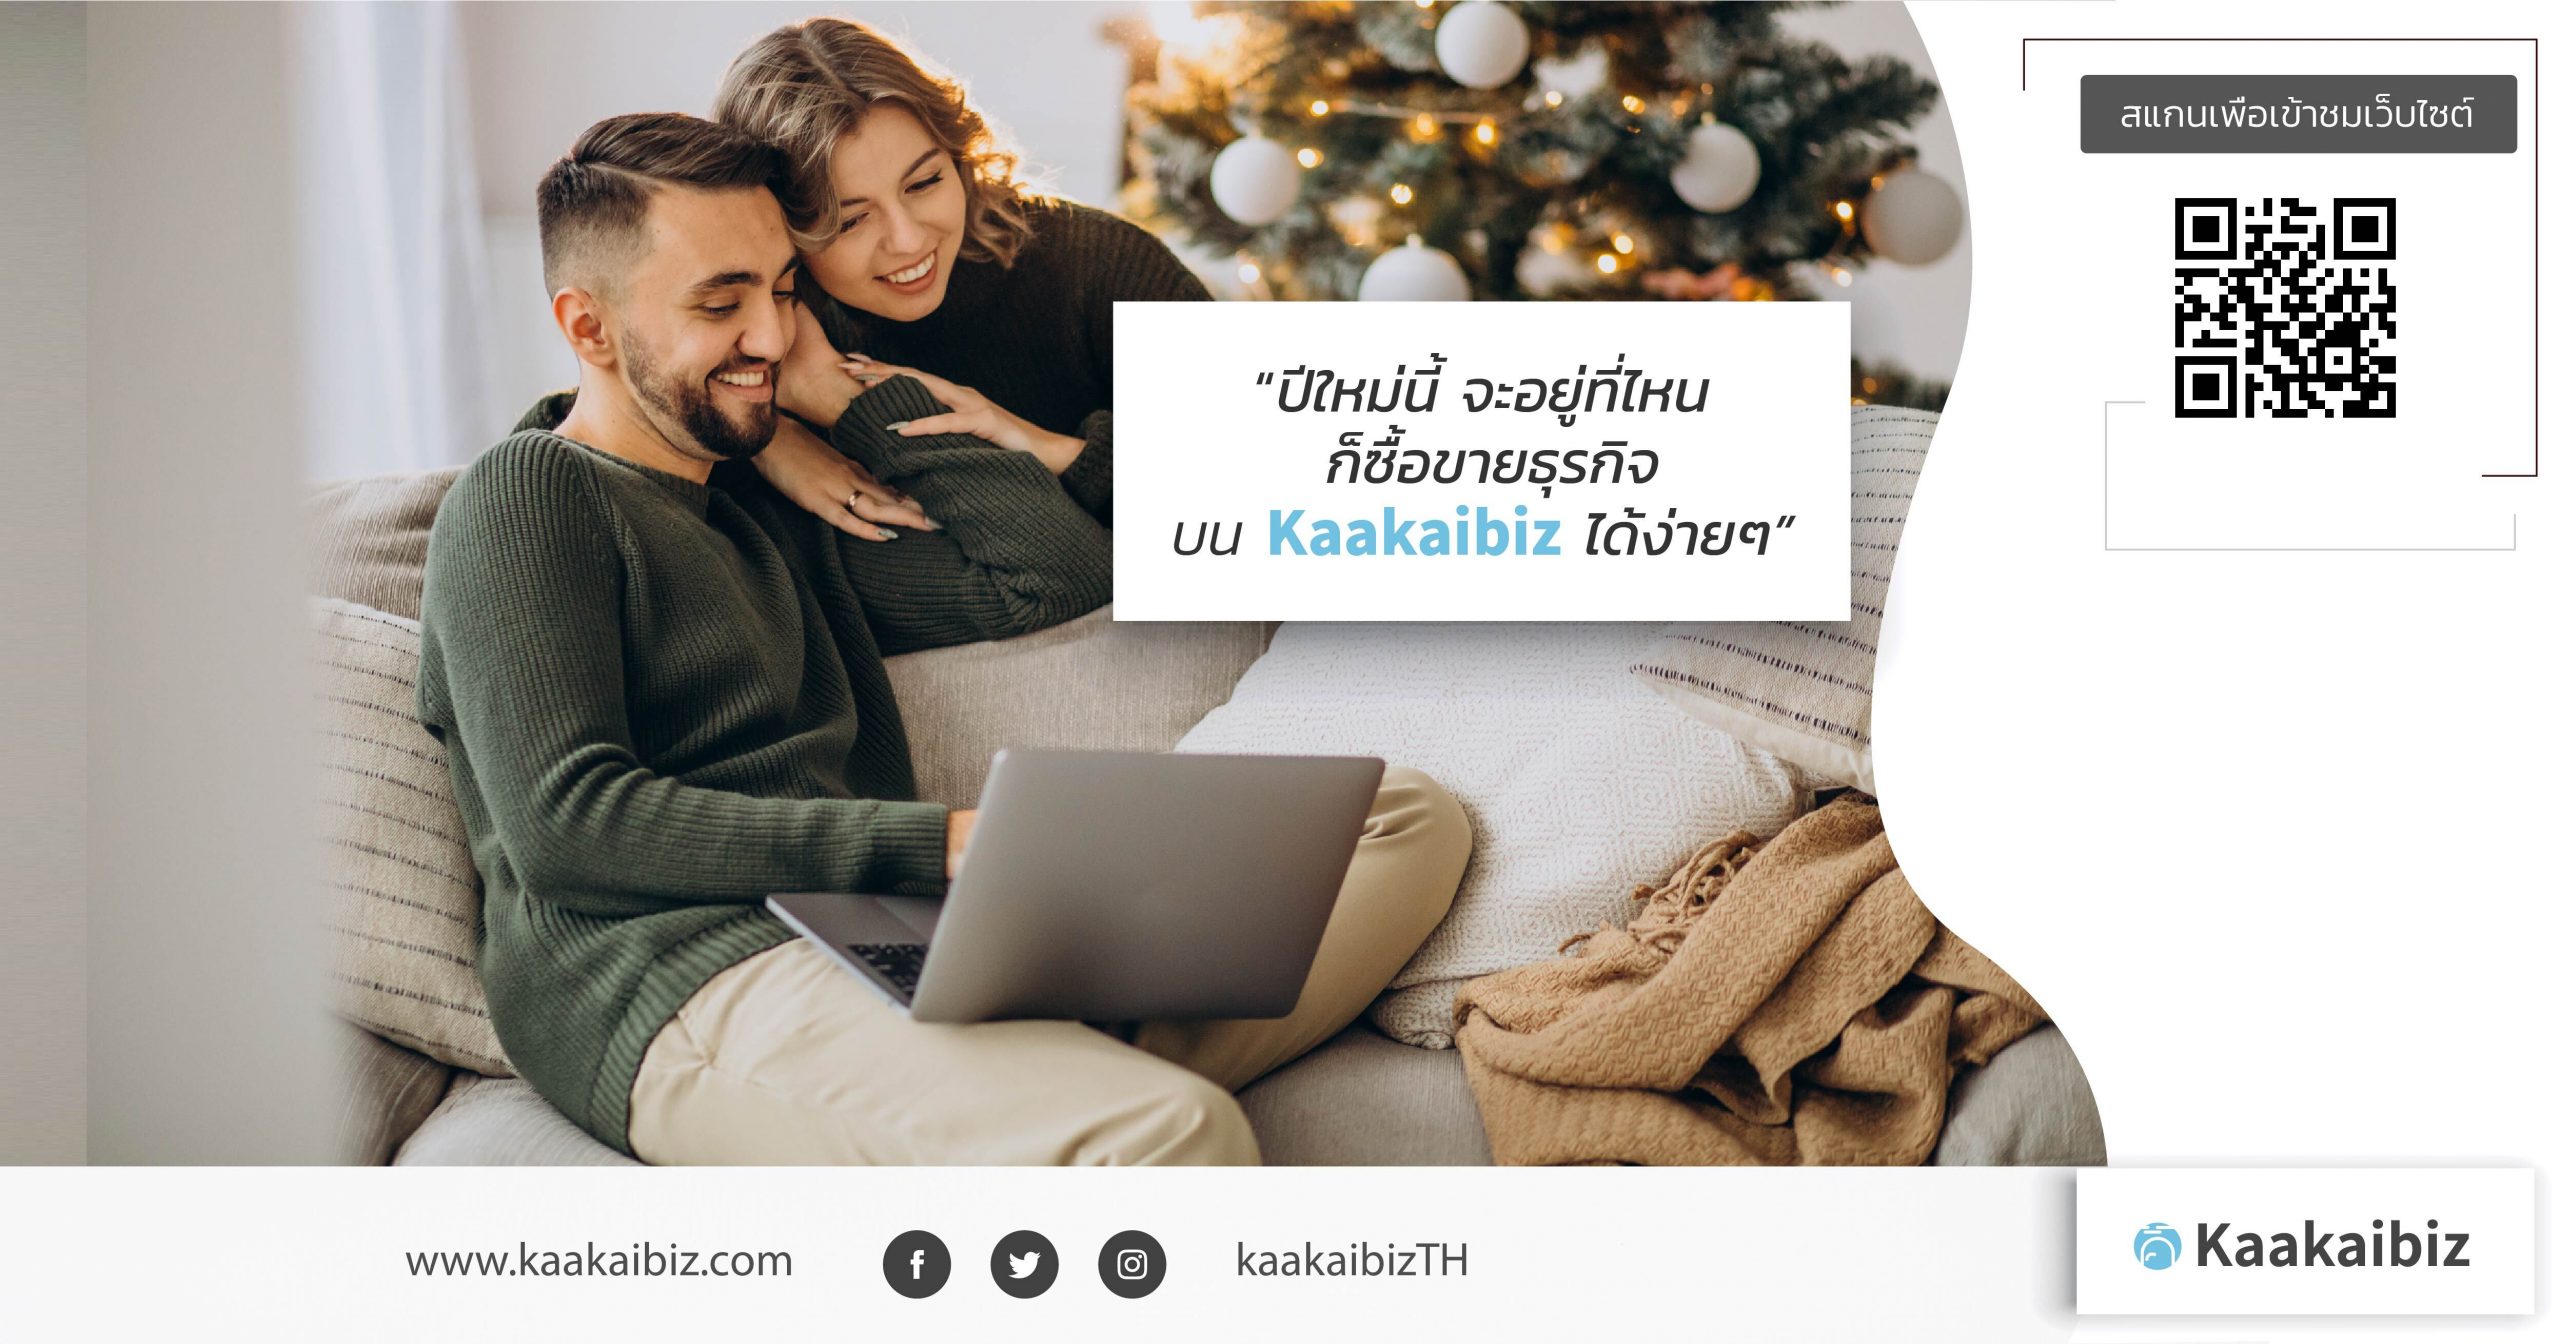 Kaakaibiz เว็บไซต์ซื้อ-ขายธุรกิจออนไลน์ ง่าย ครบ จบในเว็บไซต์เดียว สมัครสมาชิกฟรีแล้ววันนี้!